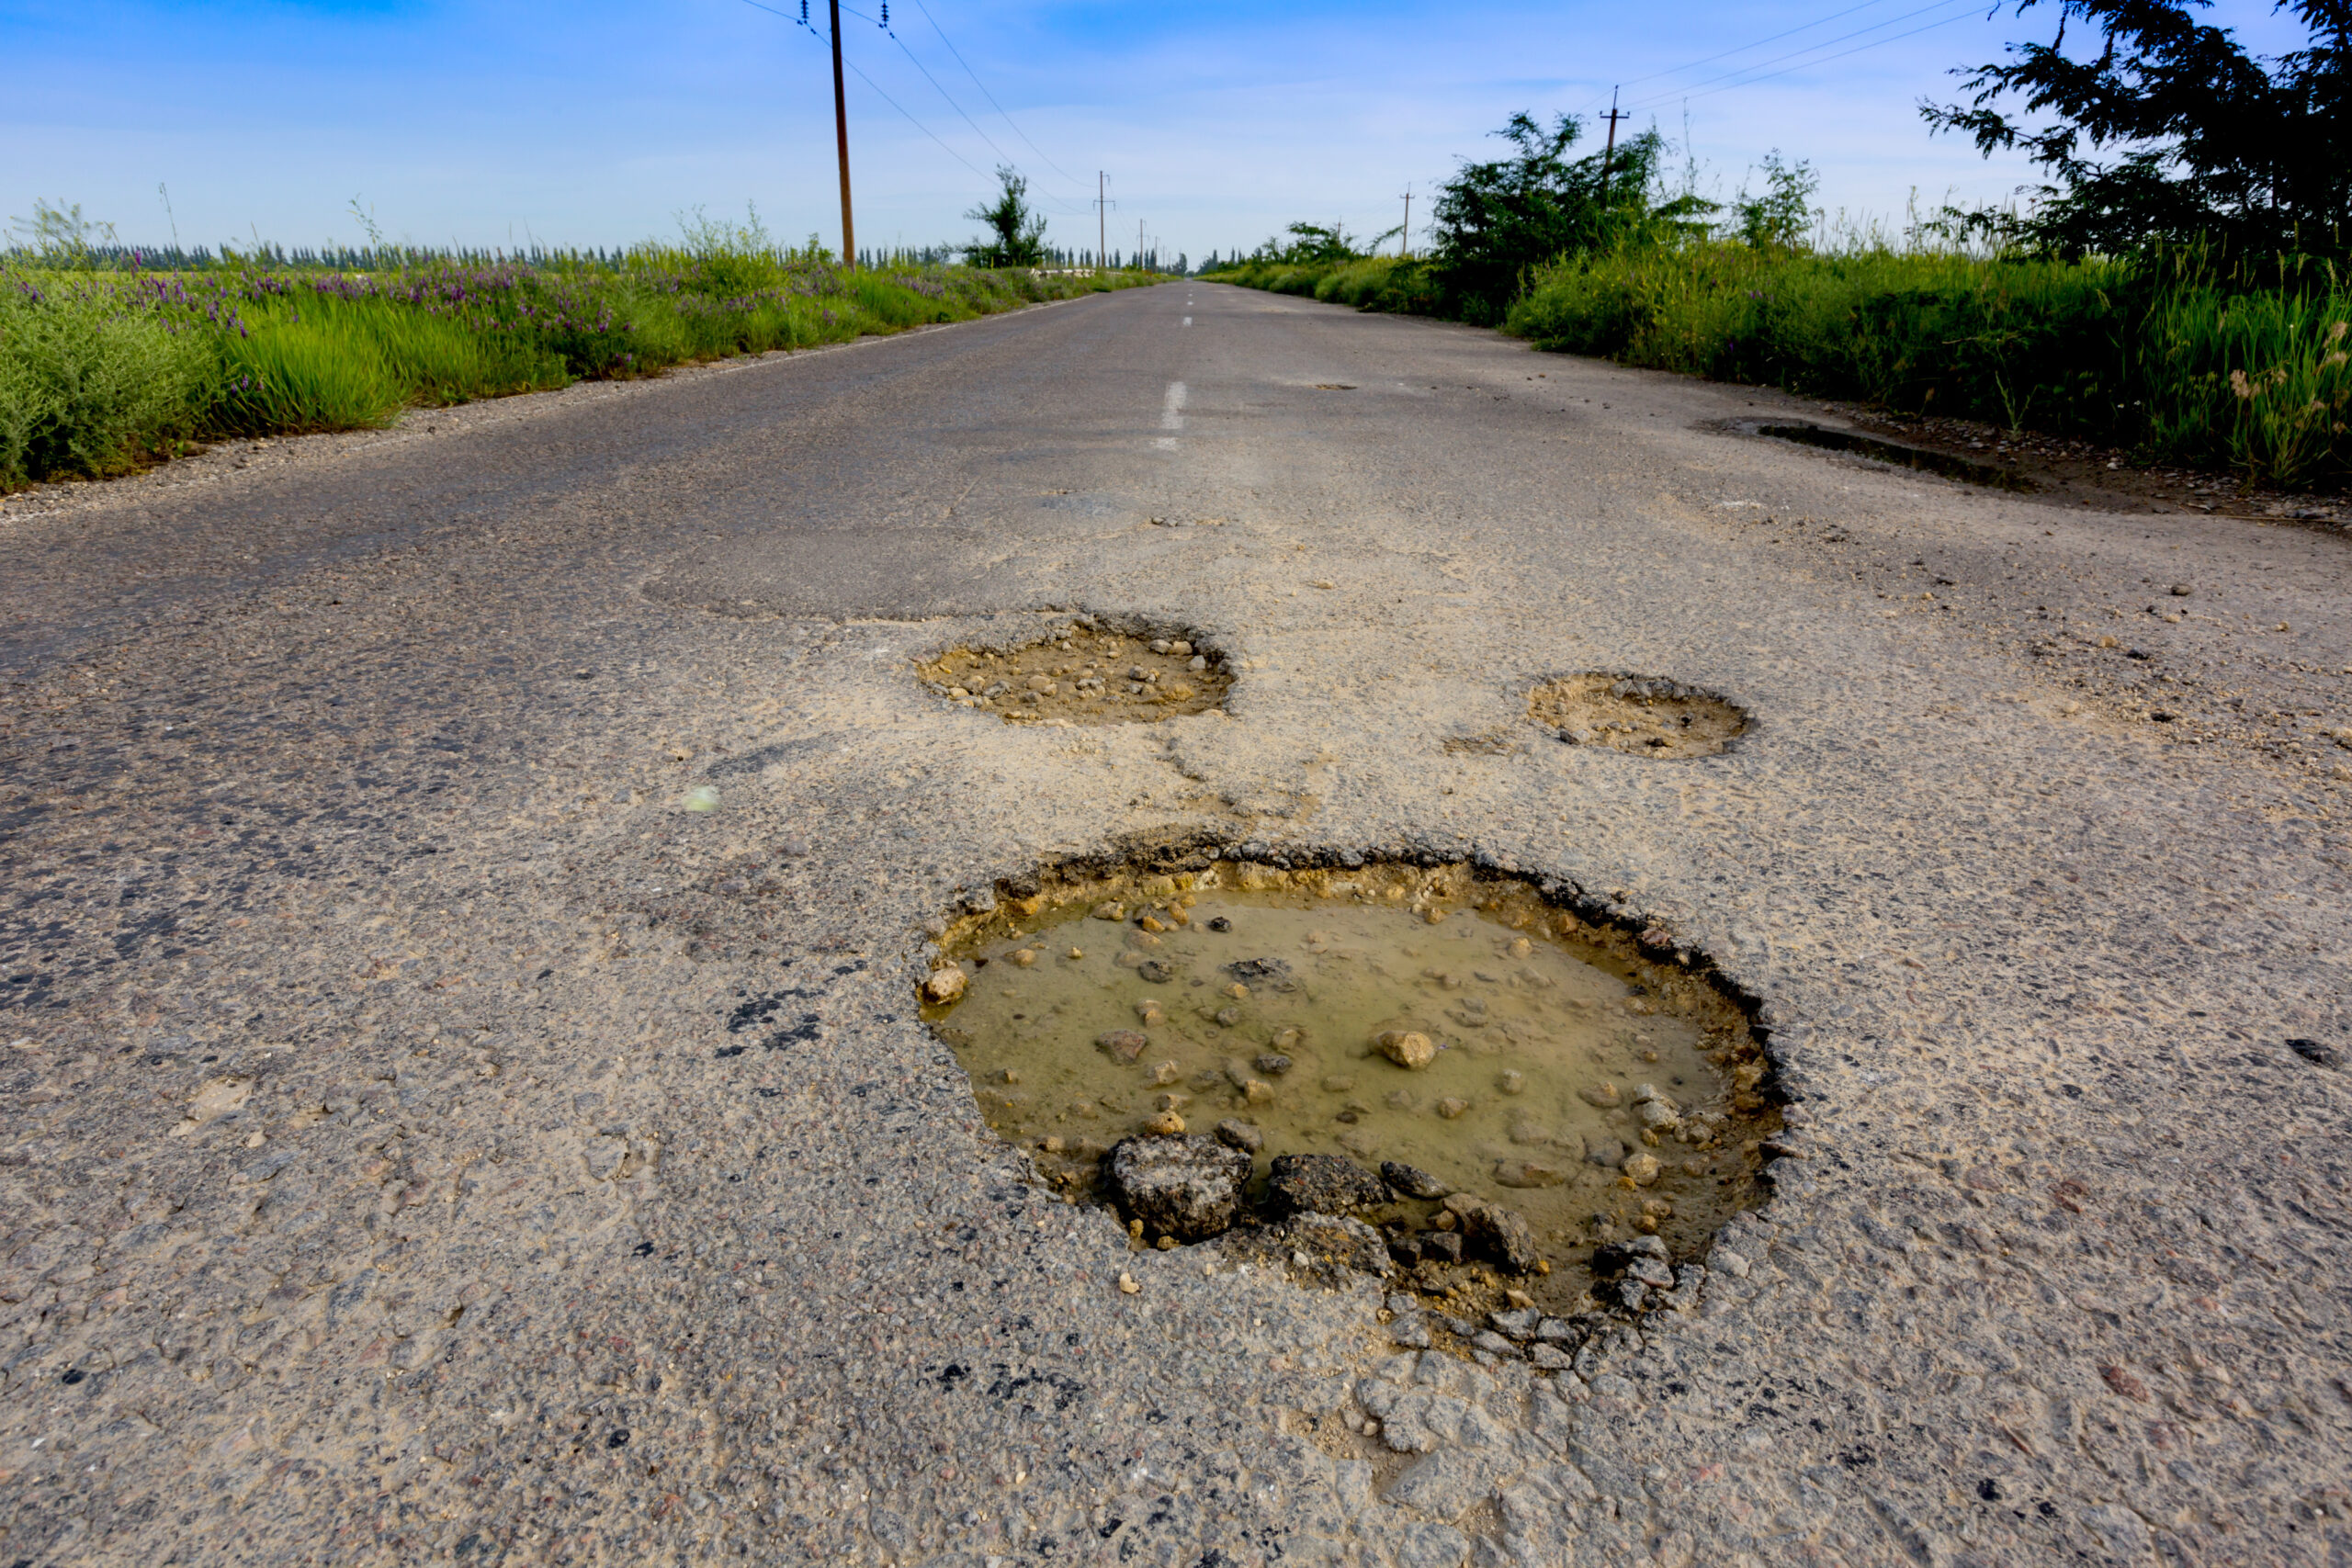 potholes poor road conditions road hazards